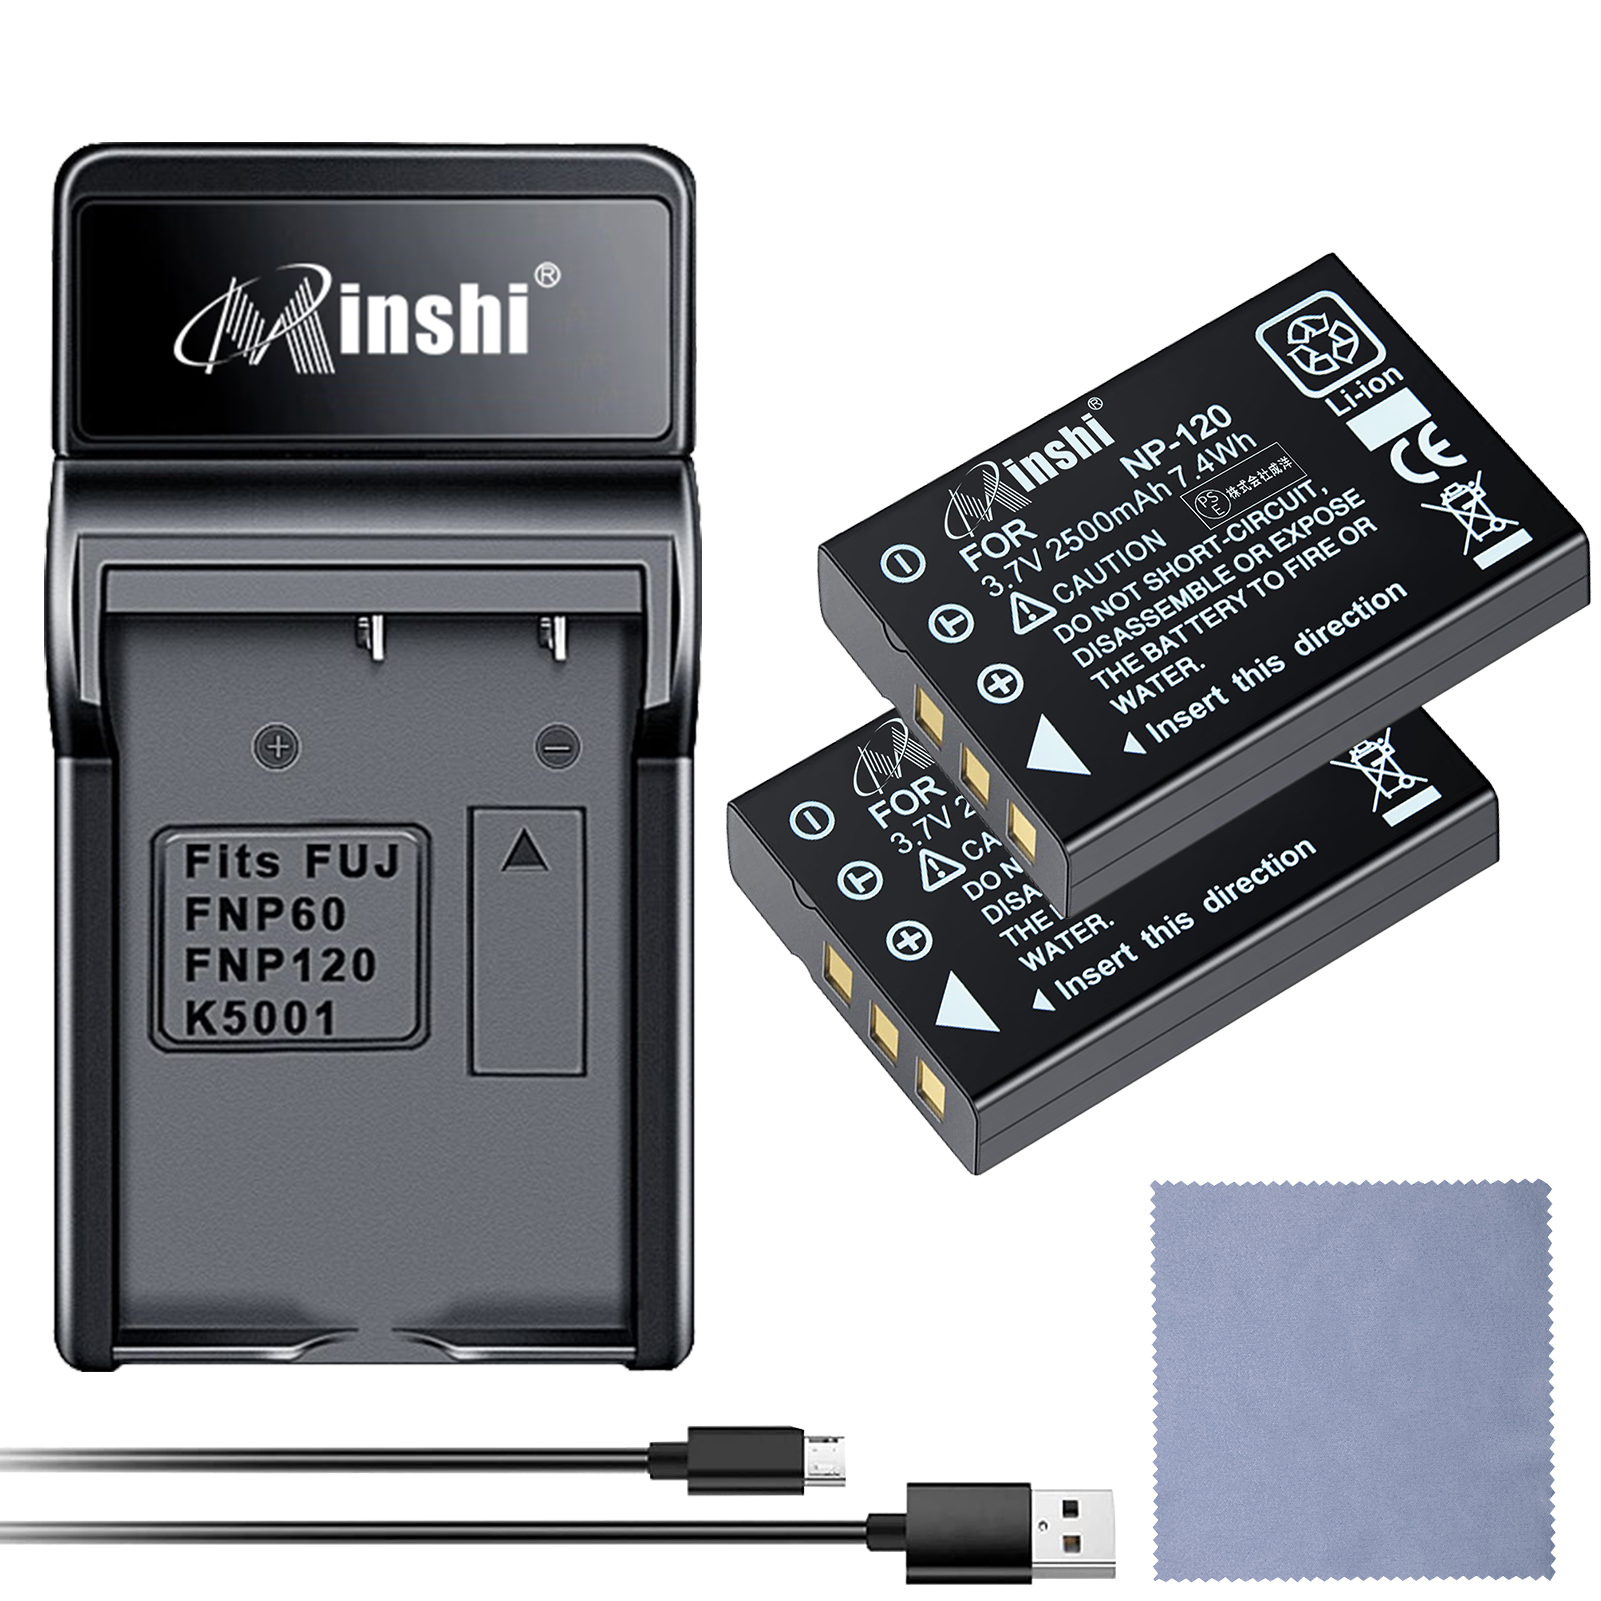 【セット】minshi FUJIFILM Caplio 500SE NP-120 【2500mAh 3.7V】PSE認定済 高品質交換用バッテリー【2個】